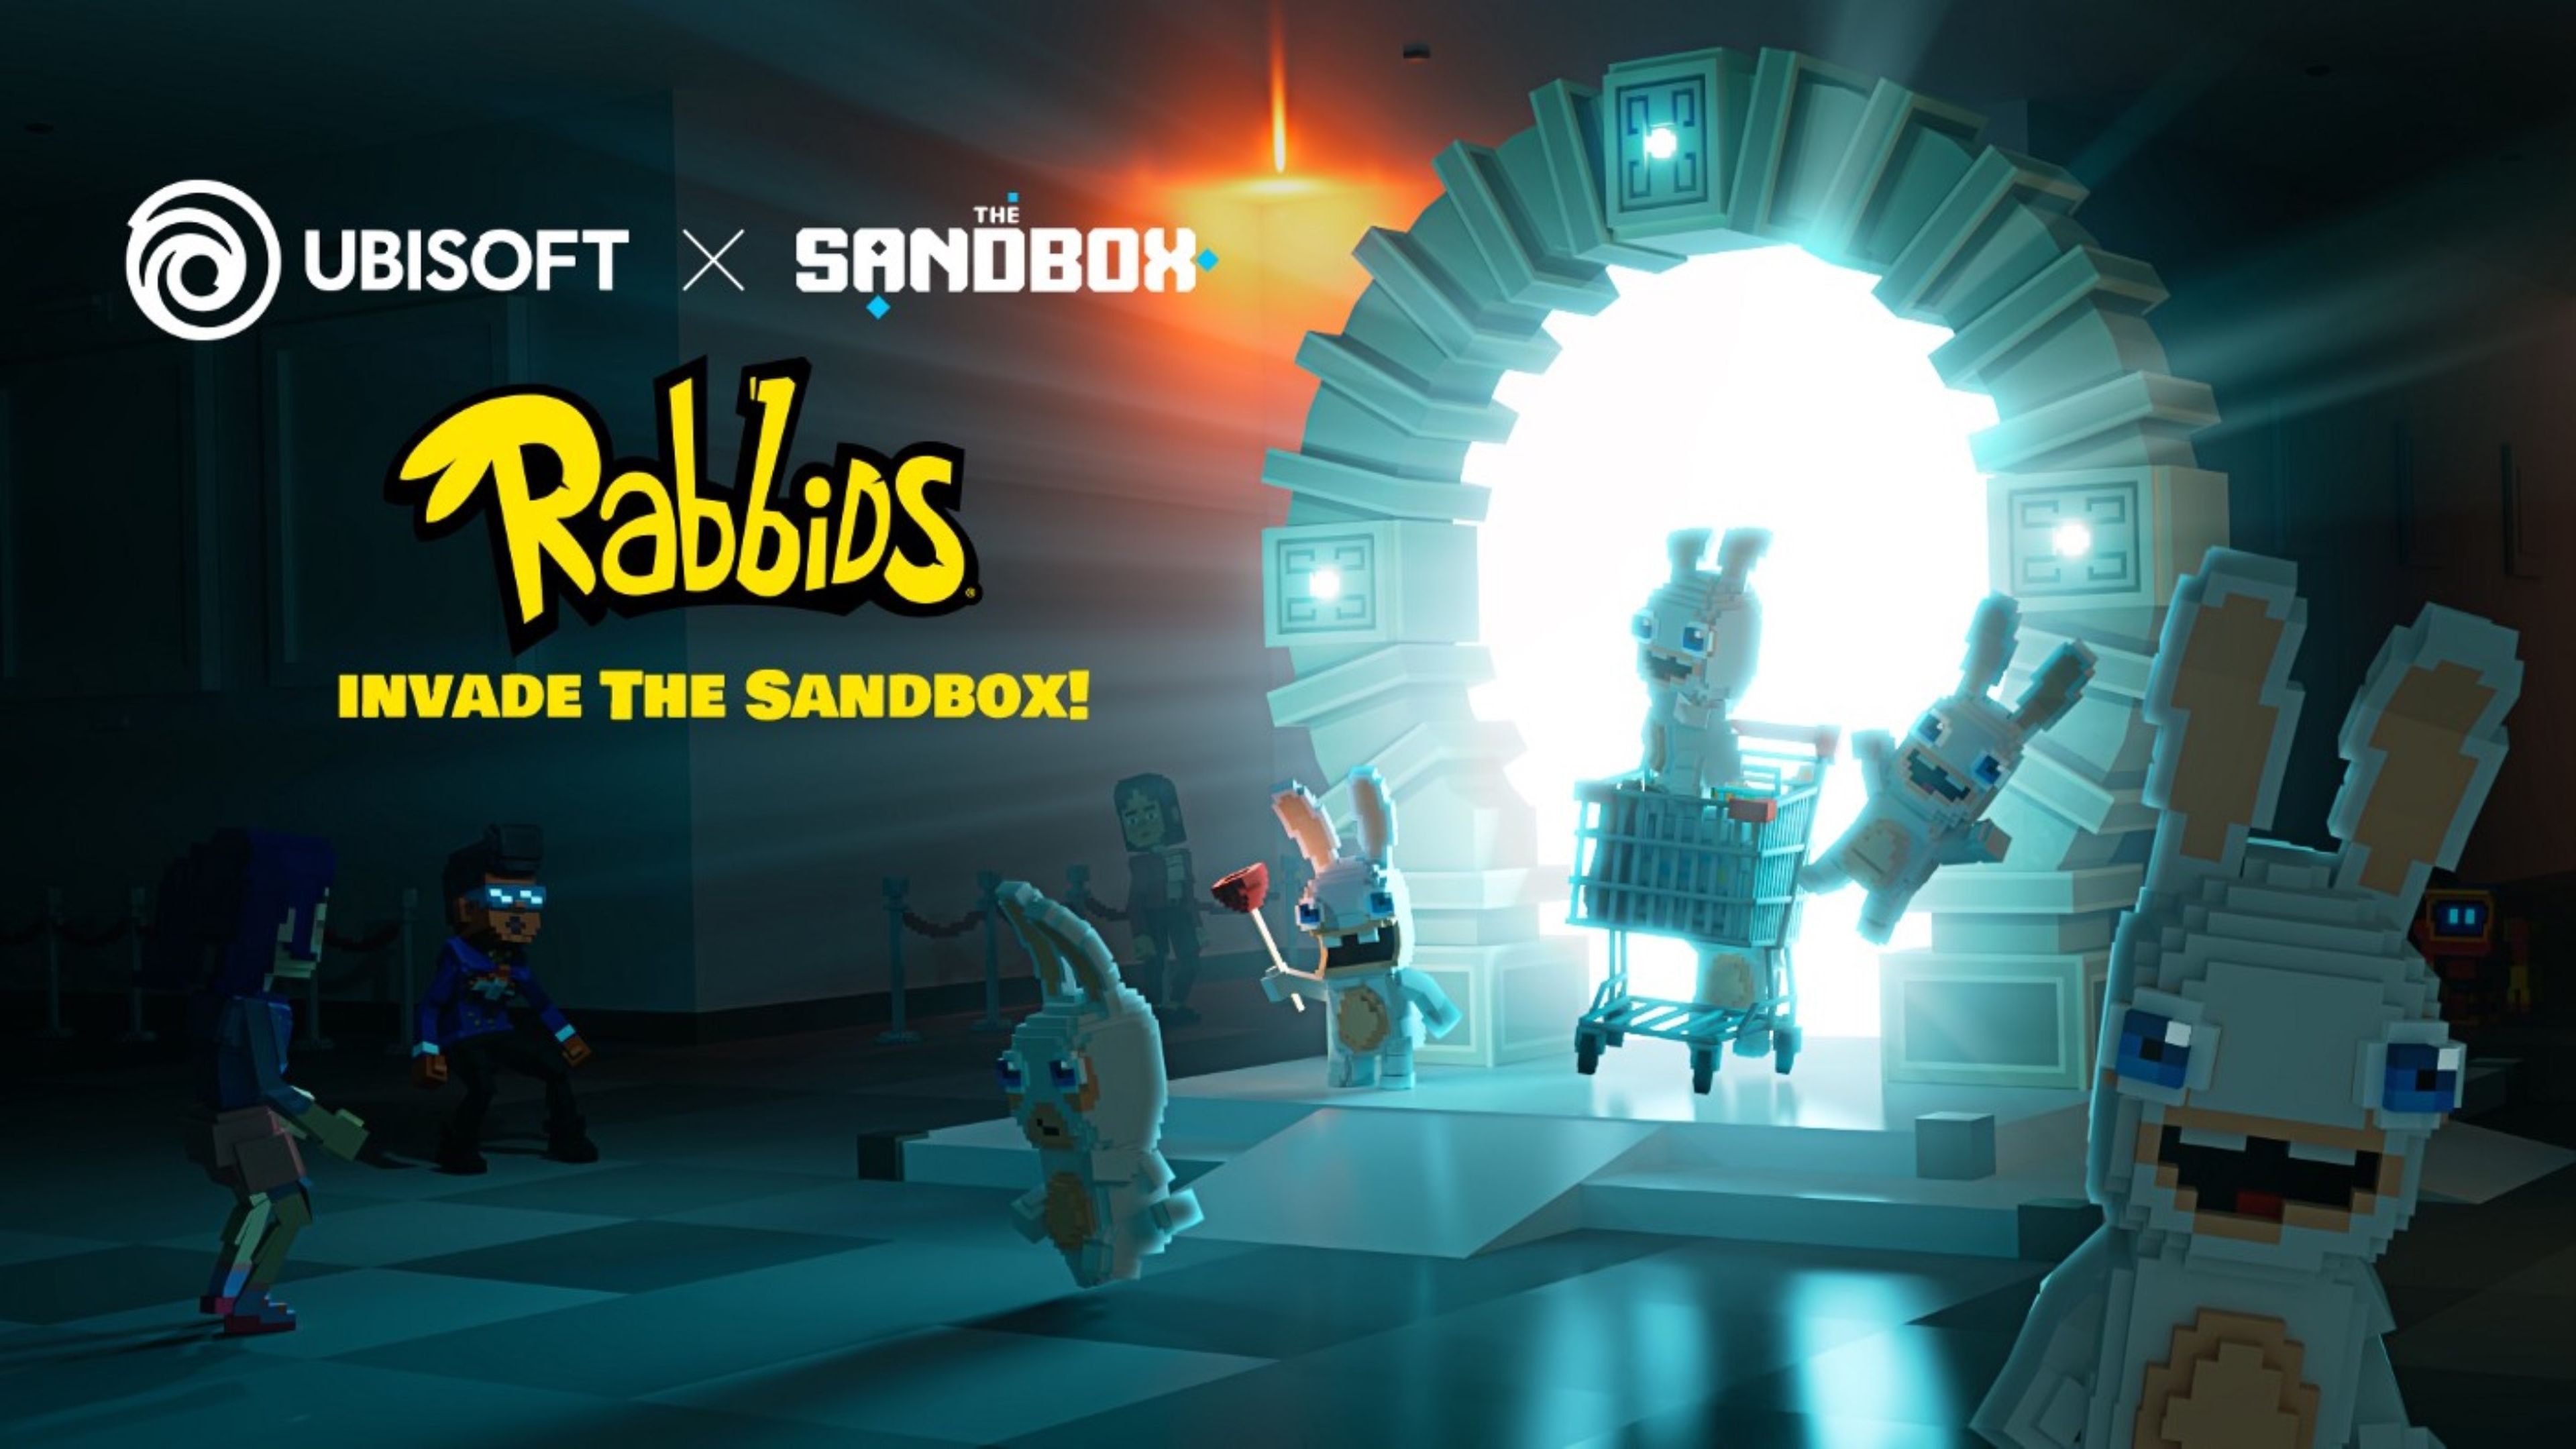 Rabbids de Ubisoft x The Sandbox